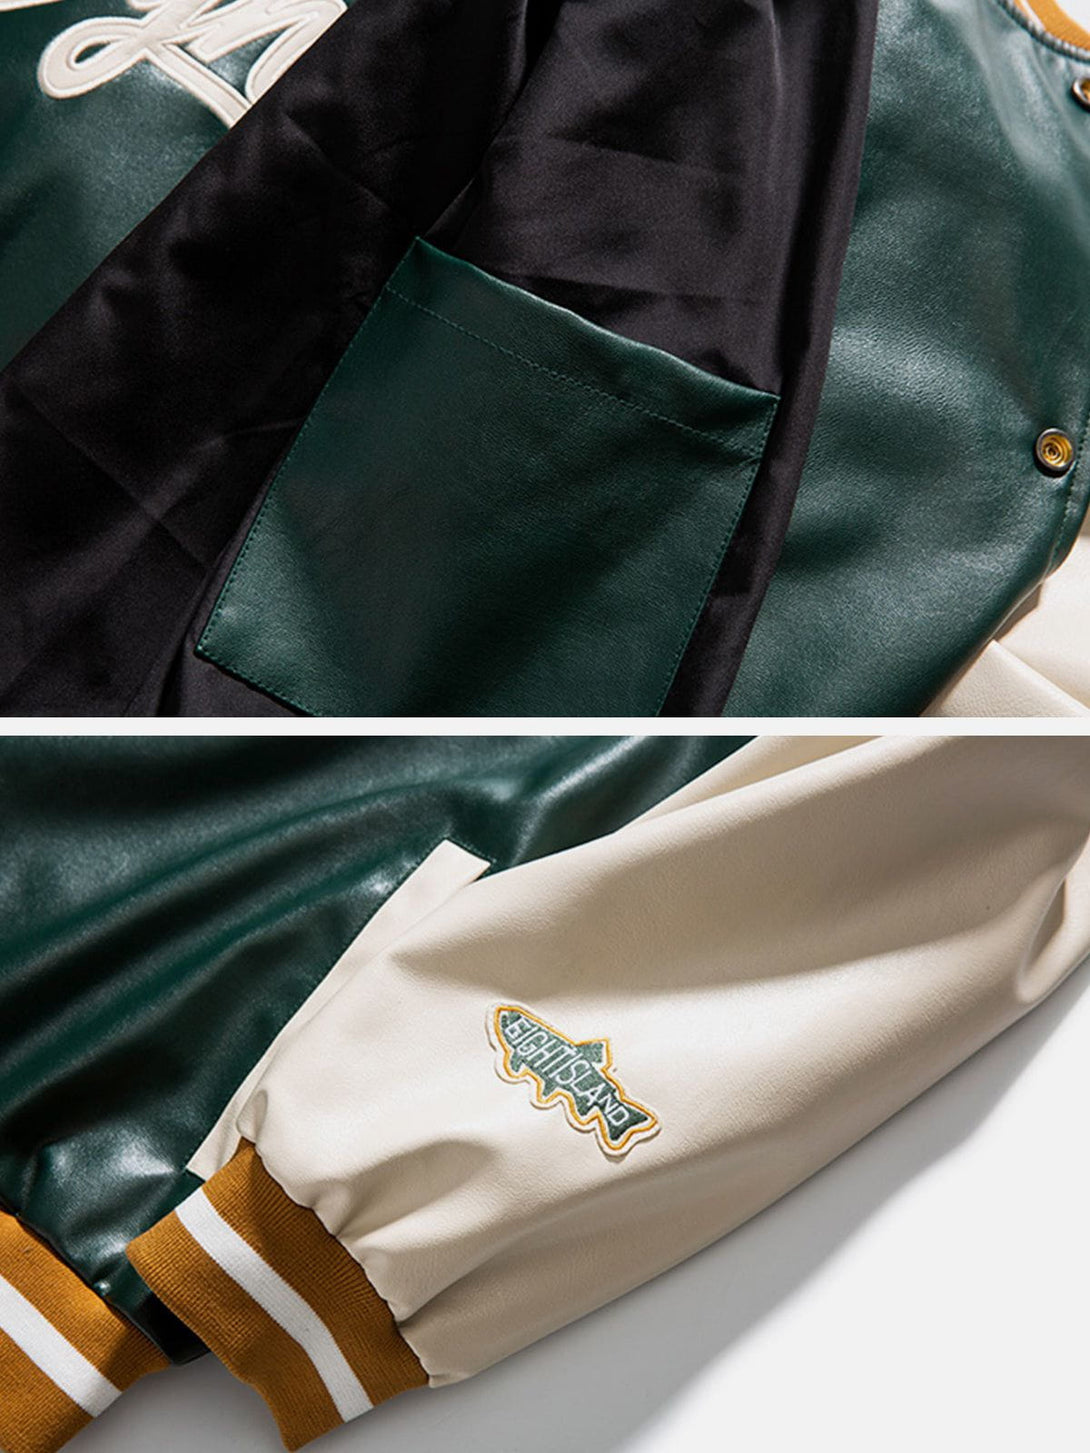 Levefly - Maple Leaf Leather Jacket - Streetwear Fashion - levefly.com